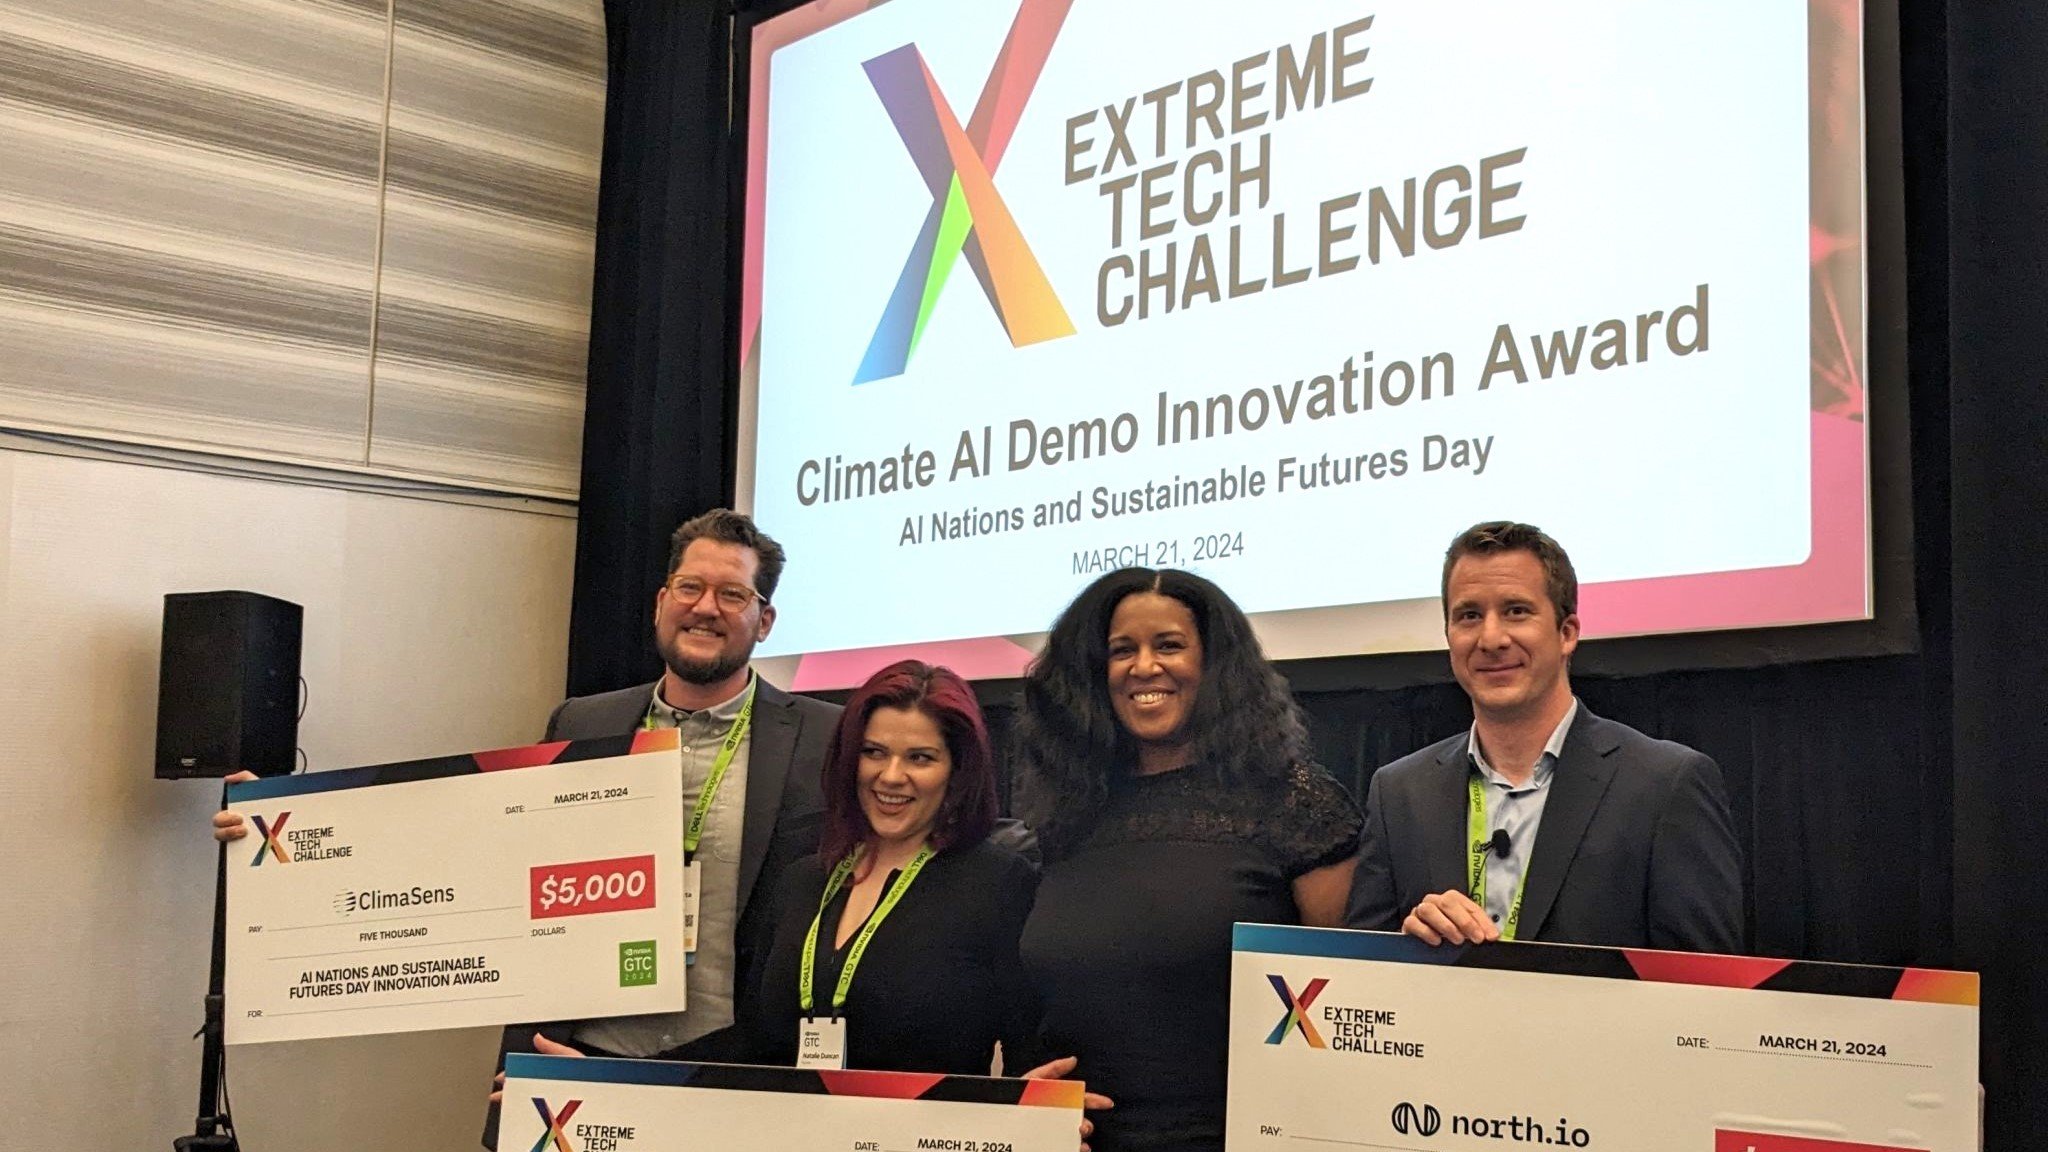 north.io gewinnt den Extreme Tech Challenge Award auf der NVIDIA GTC AI Konferenz 2024. Jann Wendt nimmt den Preis neben BUG Mars und ClimaSens entgegen.